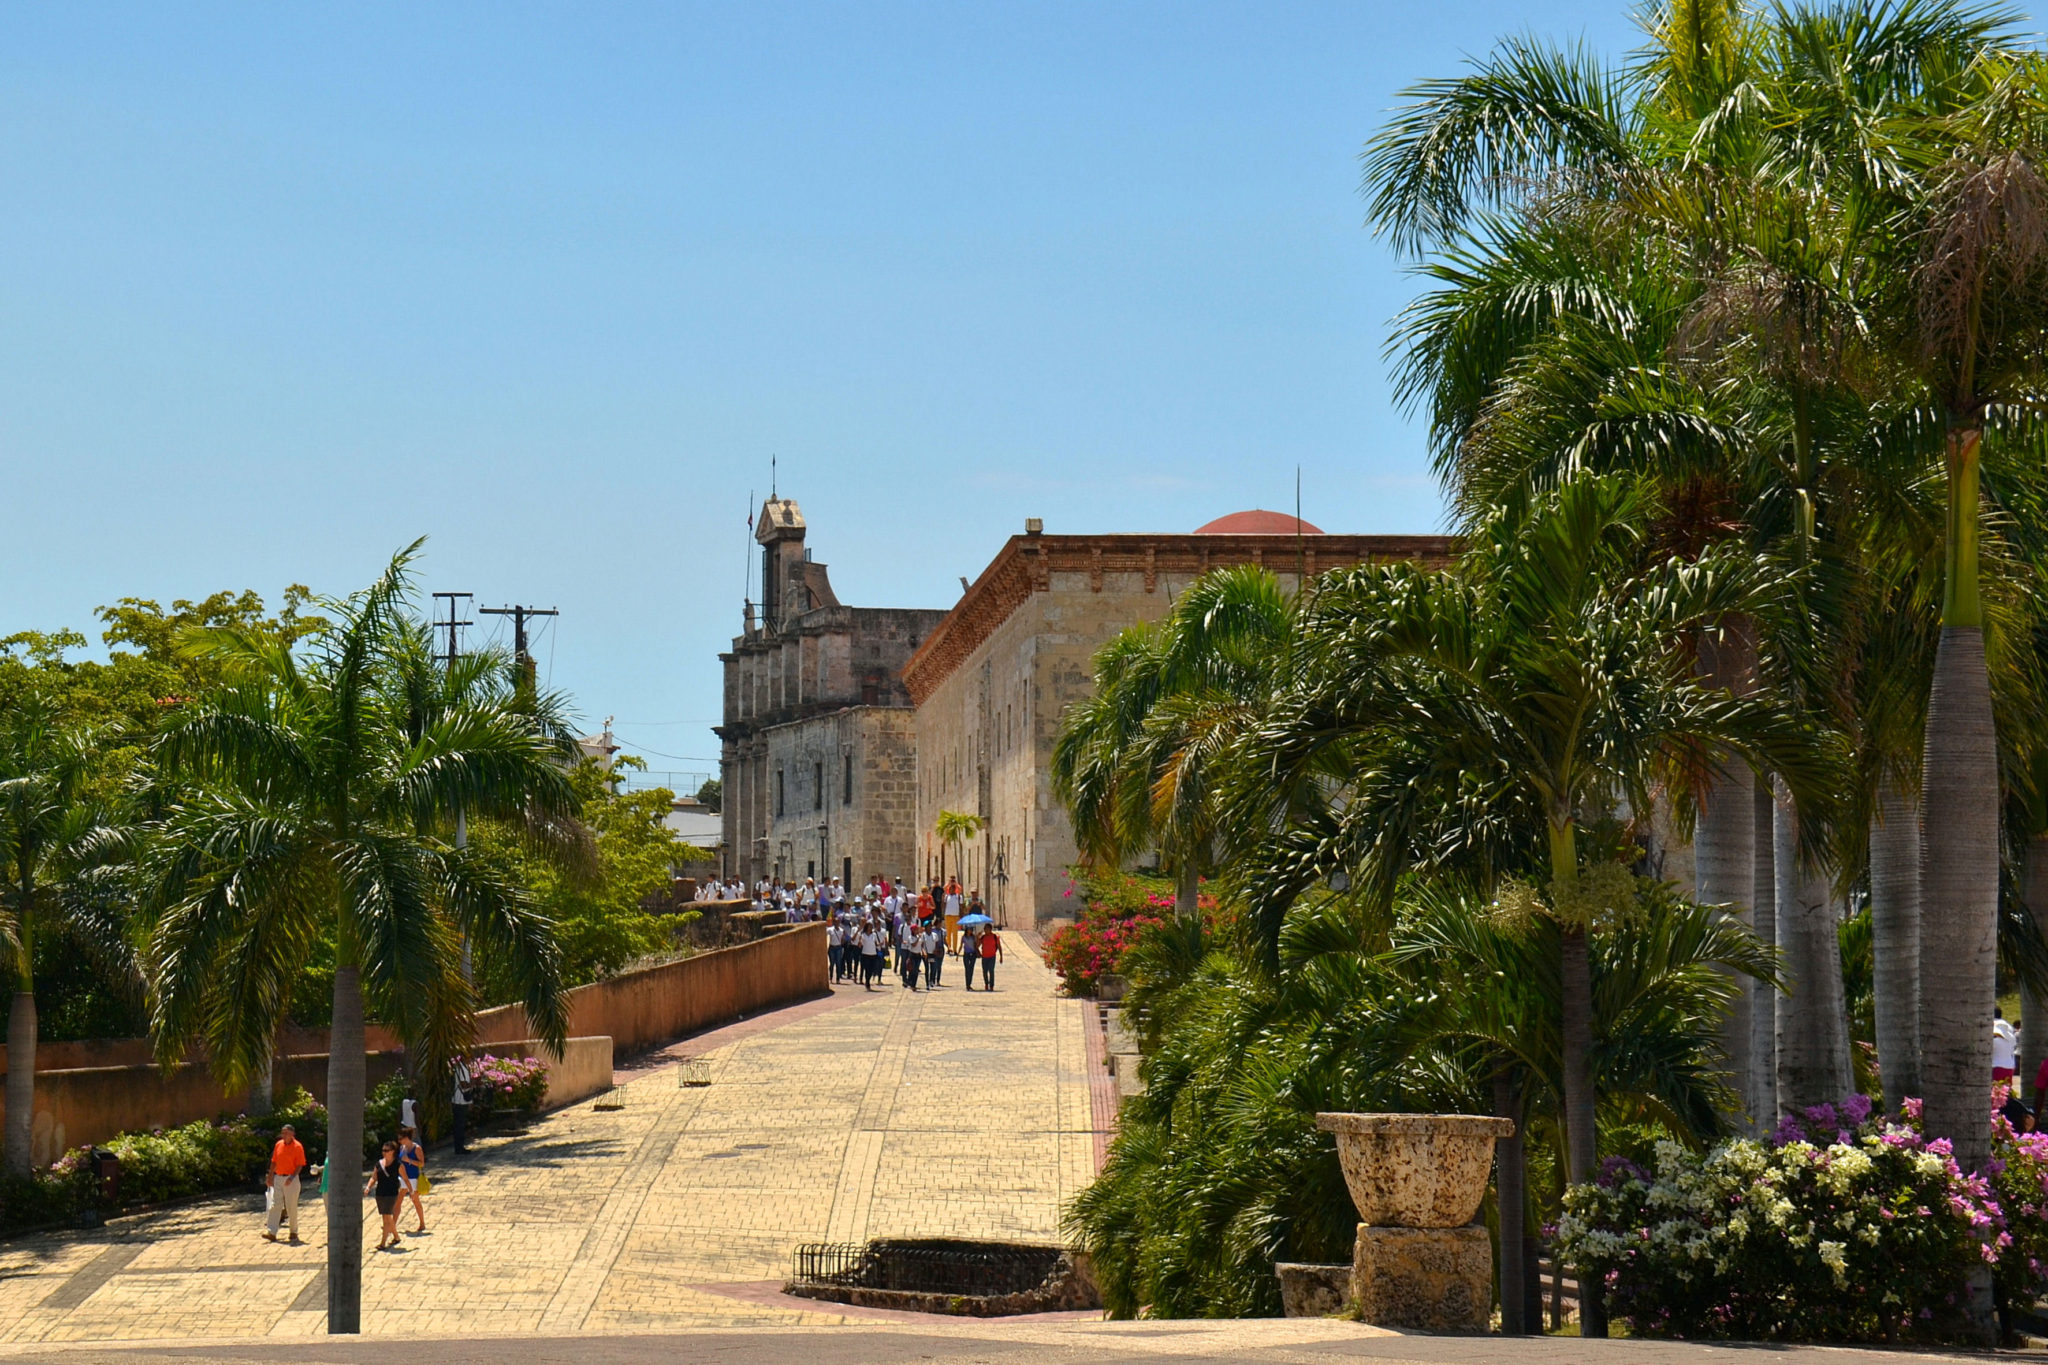 Calle las Damas in Zona Colonial of Santo Domingo